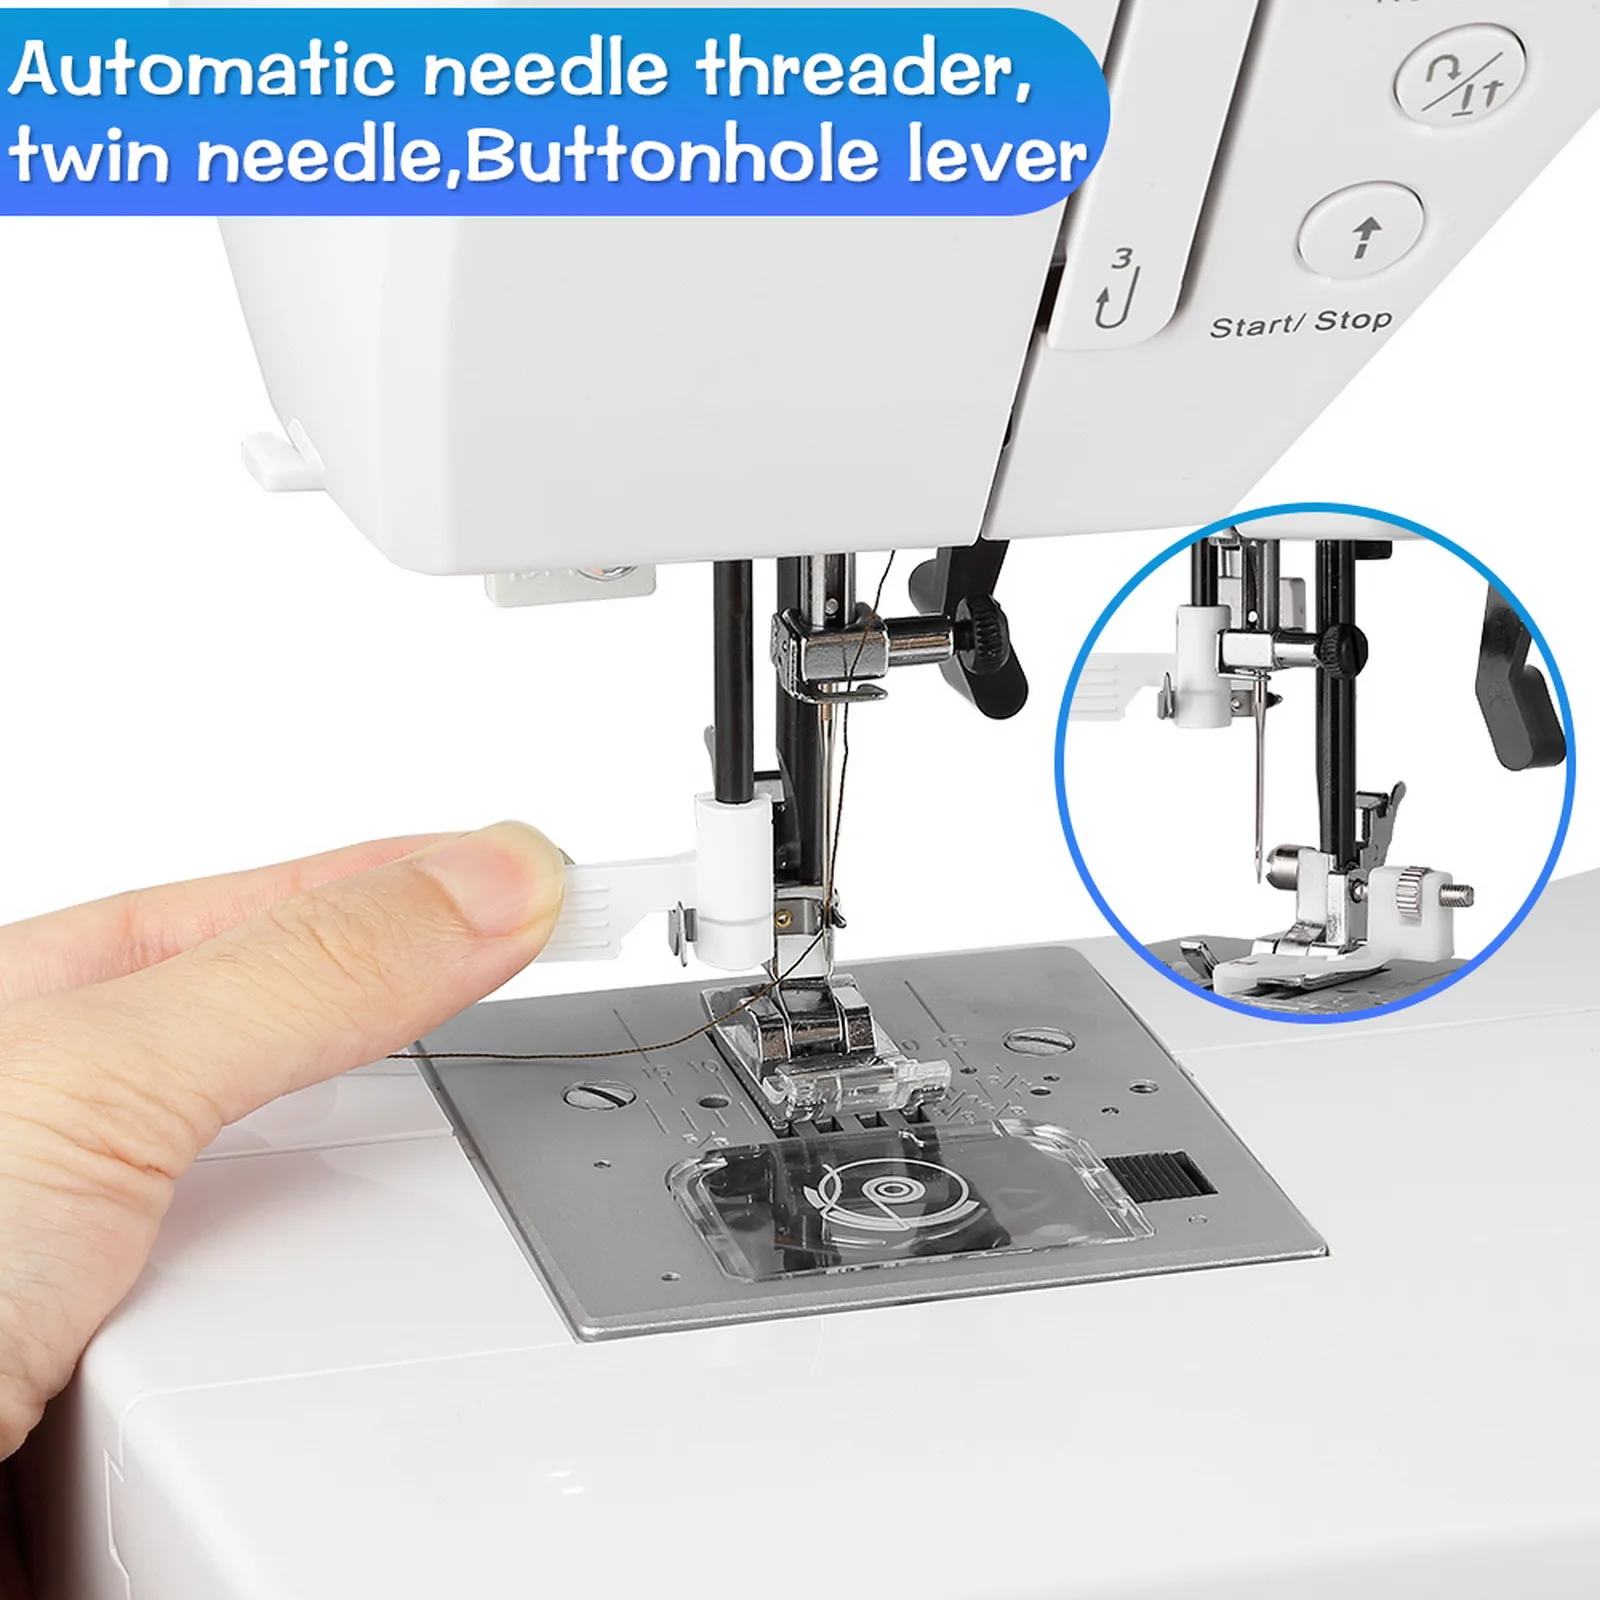 Utes 2685a profesional máquina de coser con 200 grabados computernähmaschine freiarm 